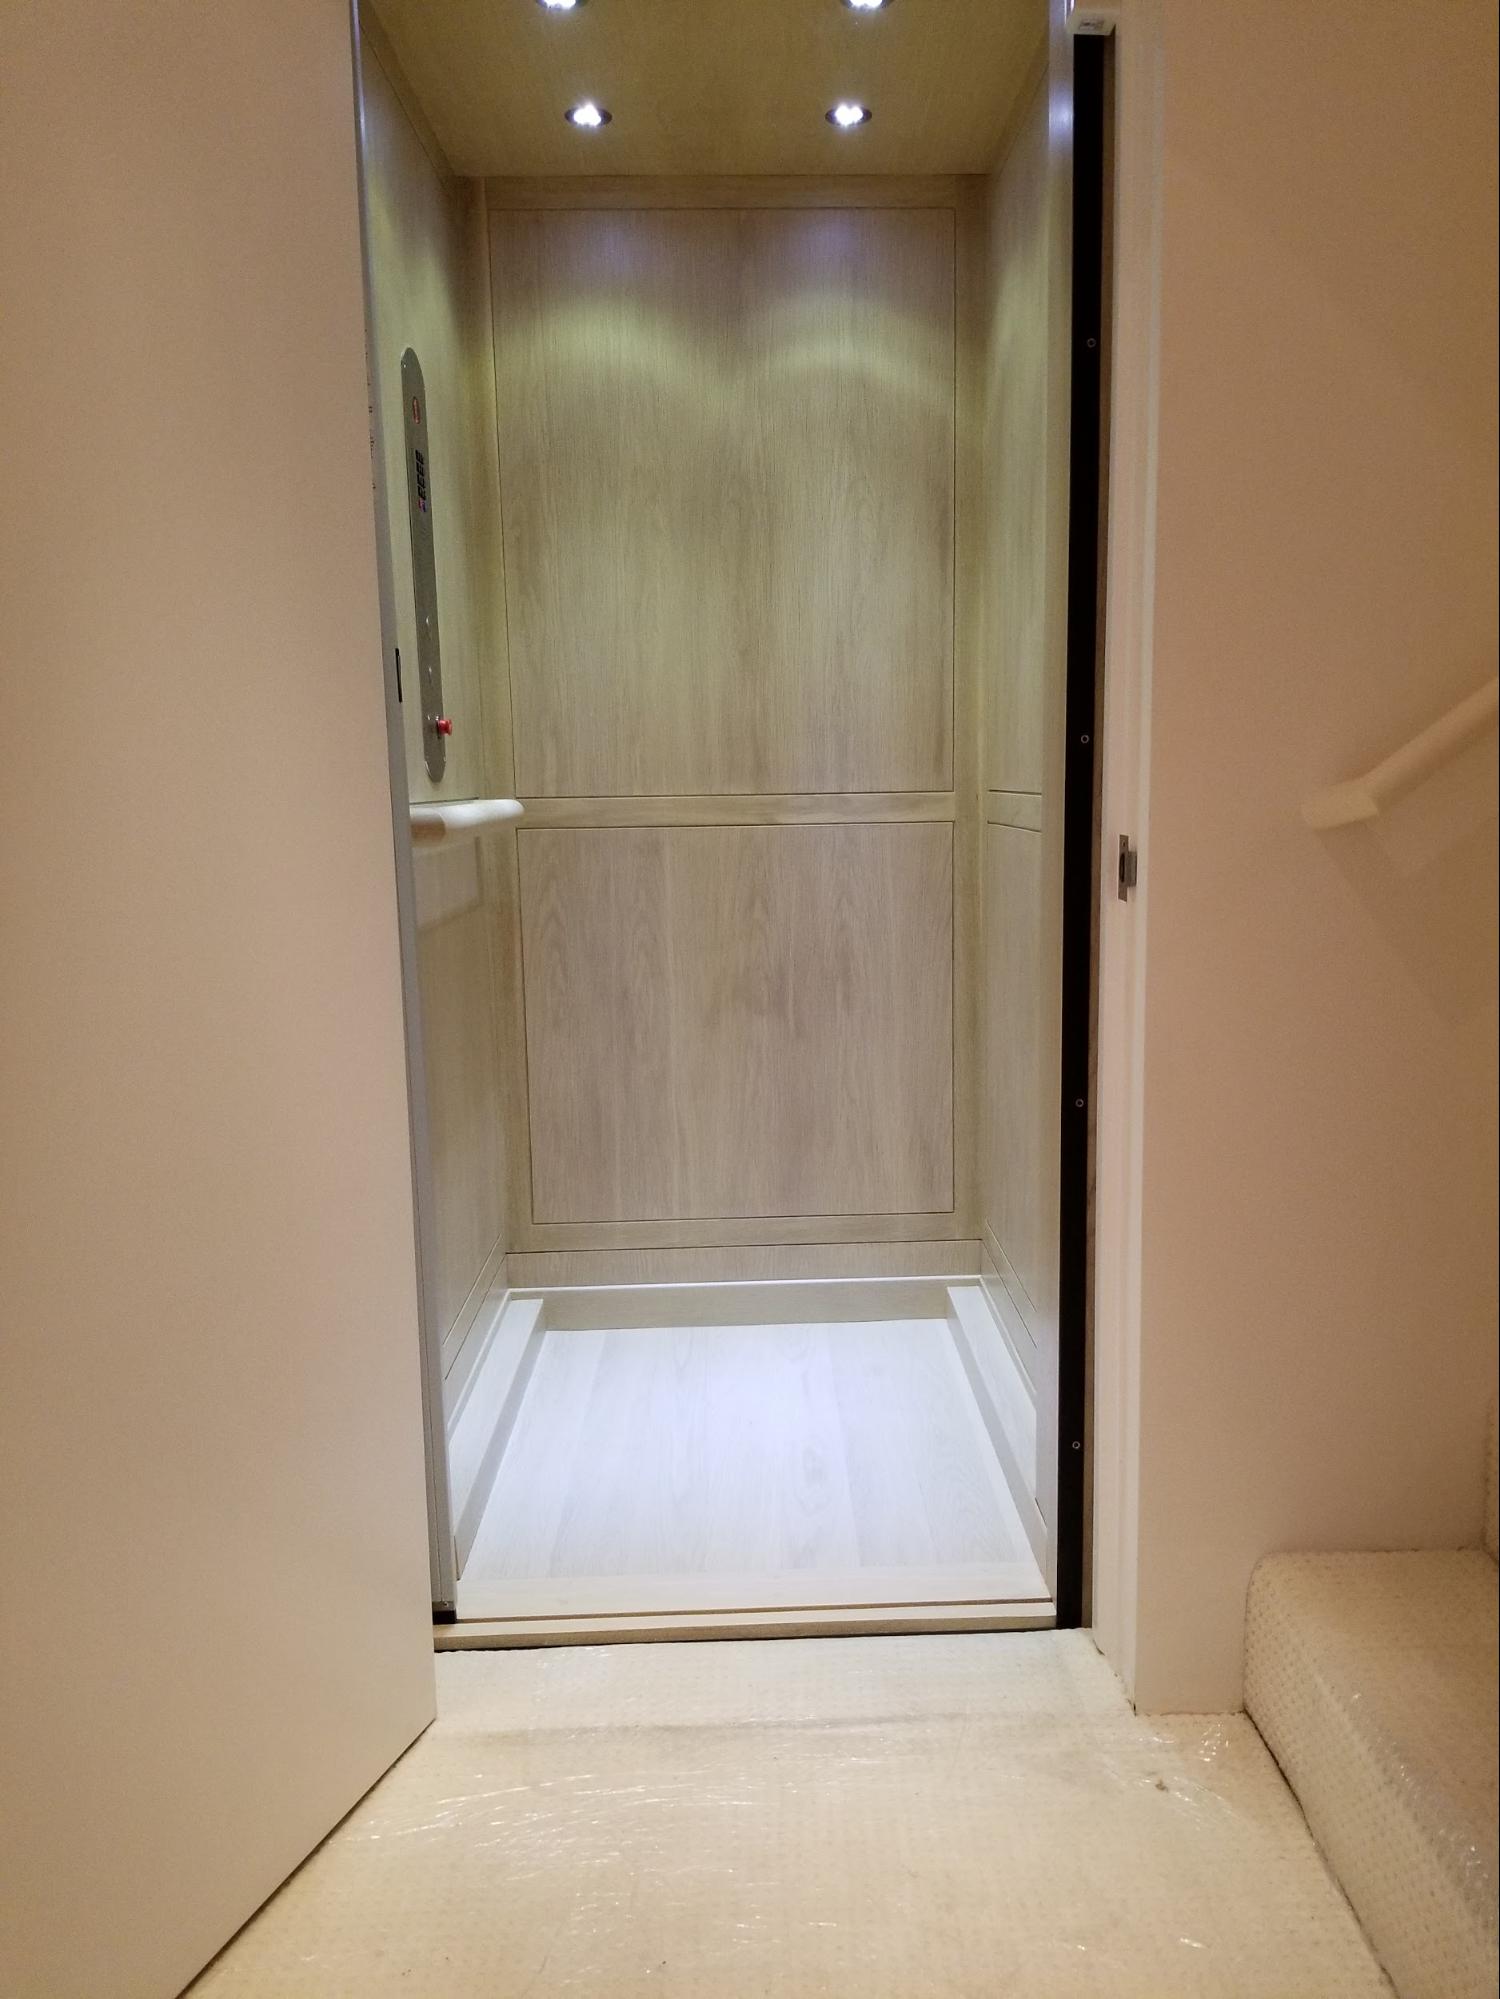 Affordable Home Elevators : tubular elevator